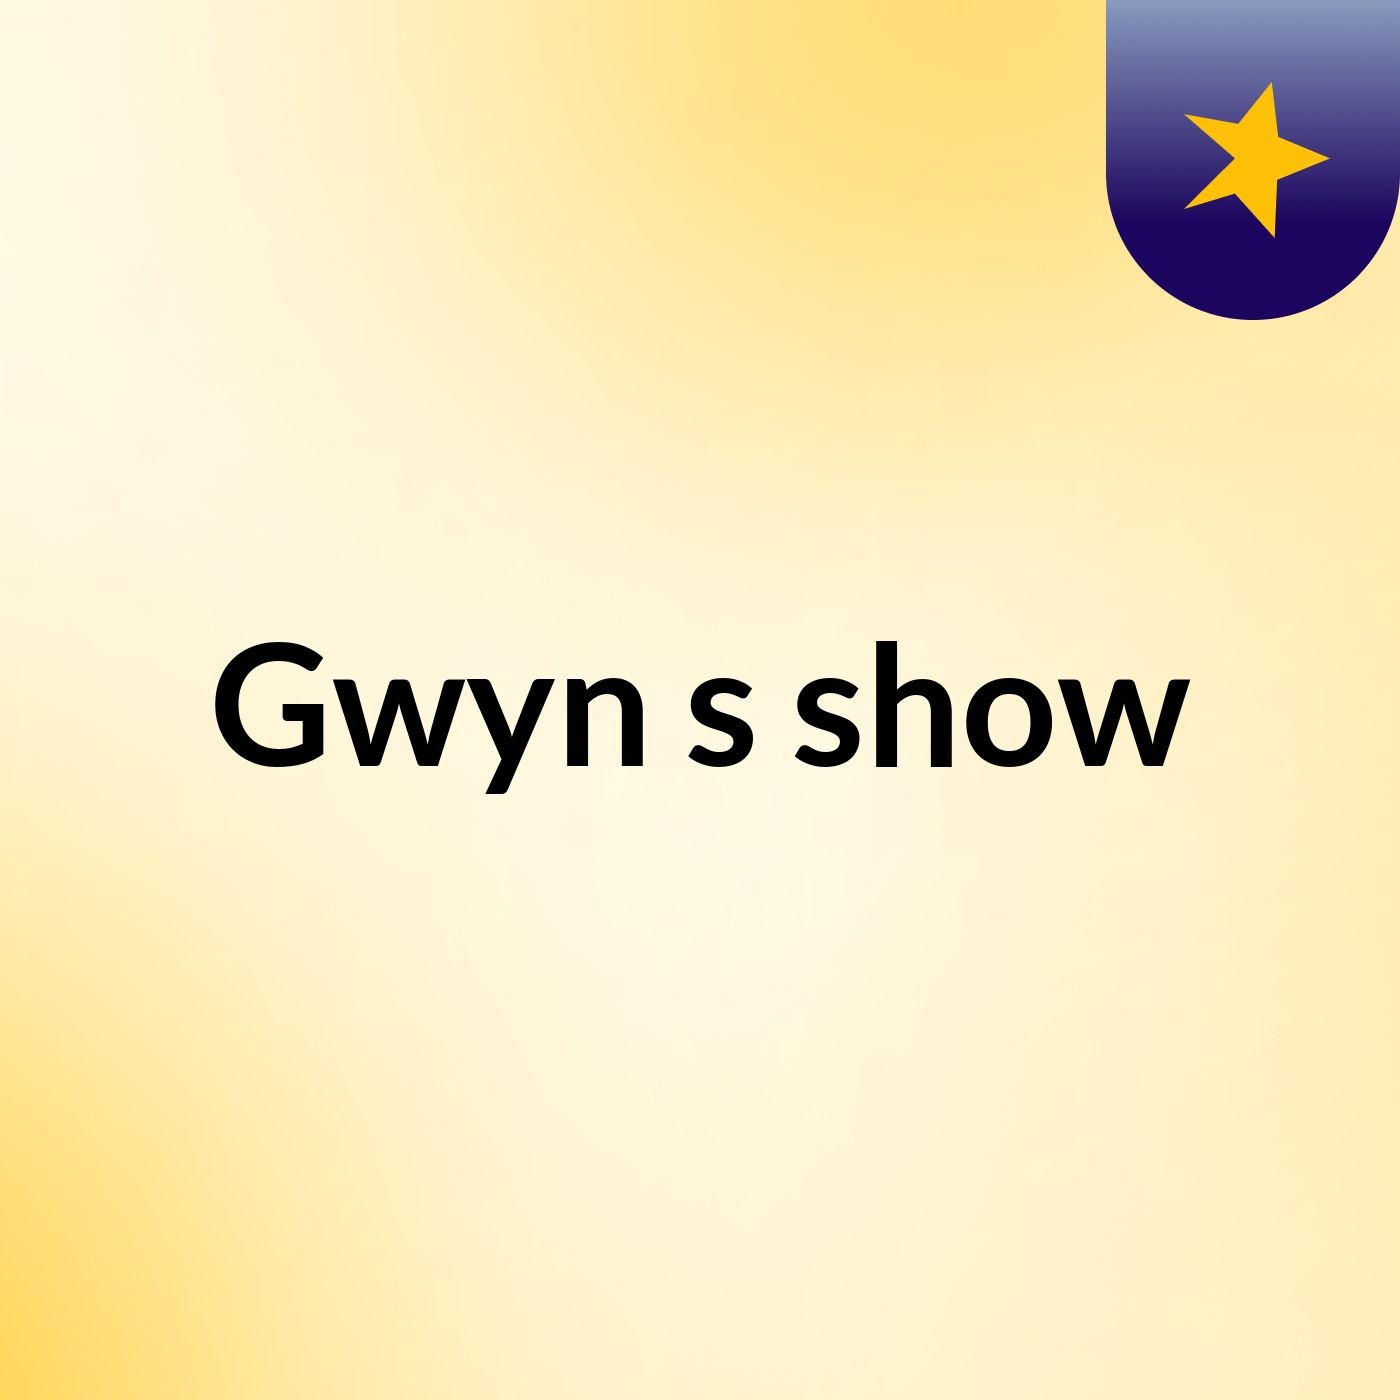 Gwyn's show